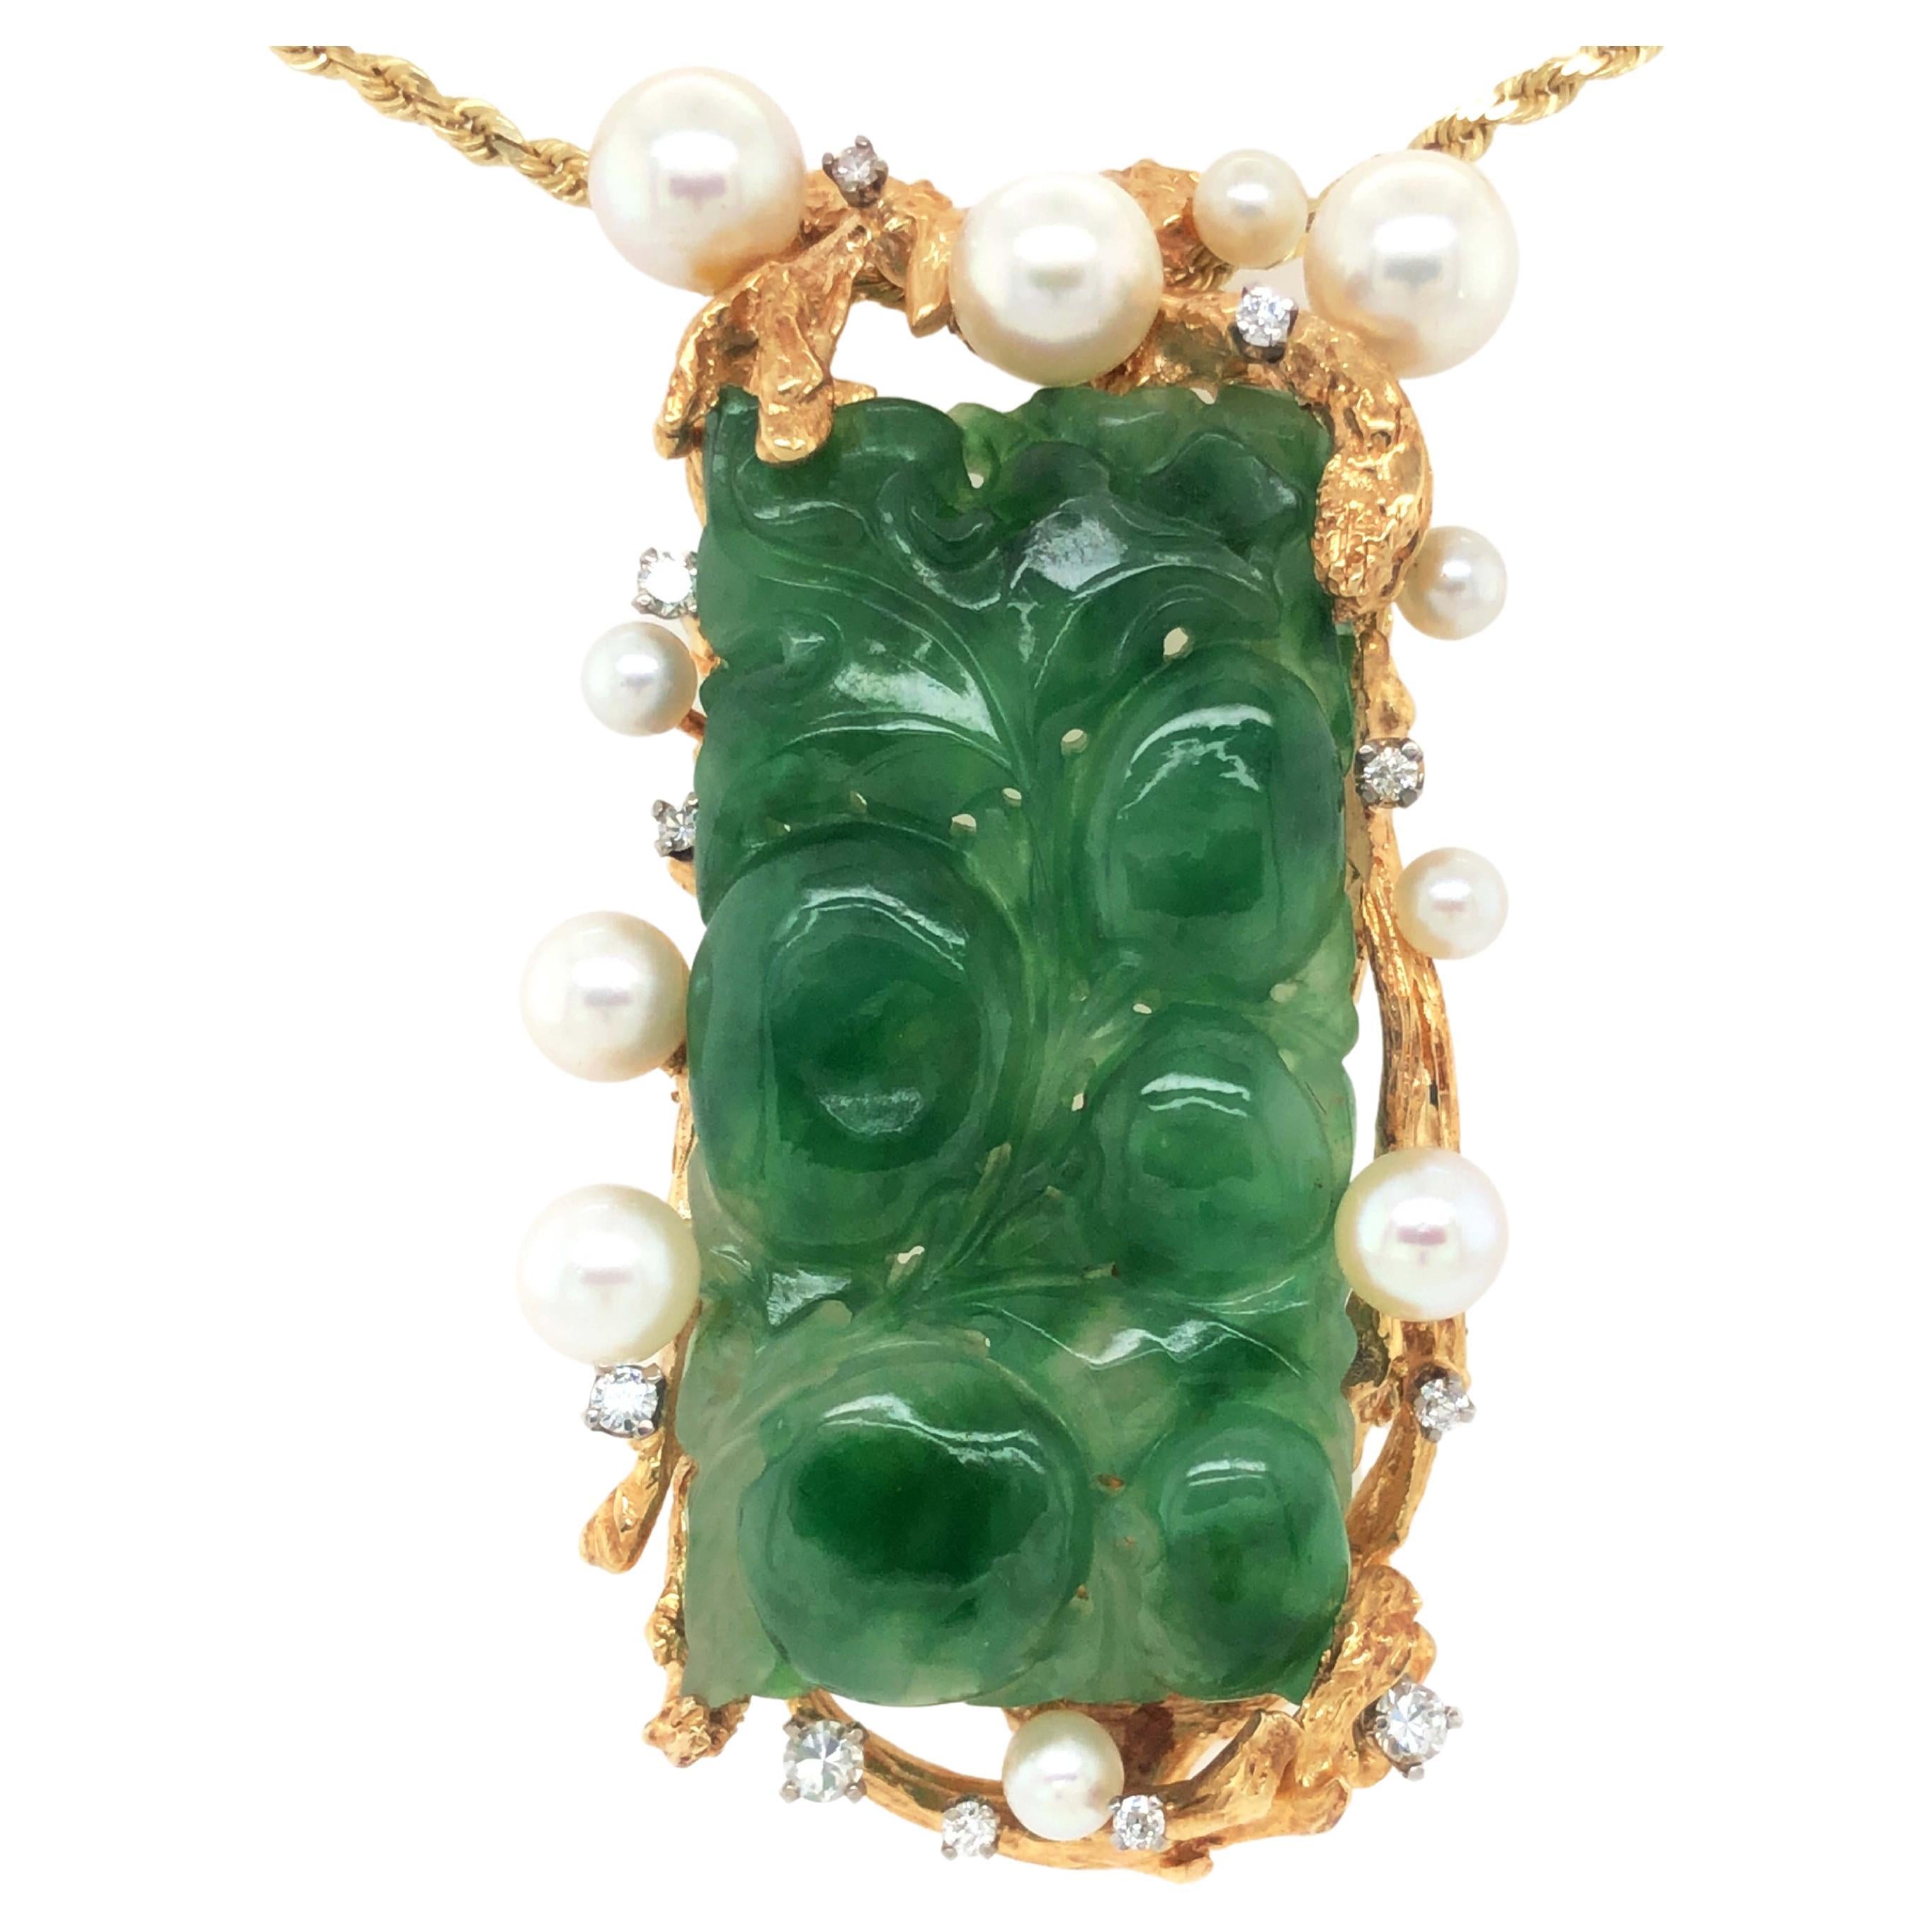 Pendentif vintage sculpté en or jaune 14 carats avec jadéite verte, diamants et perle